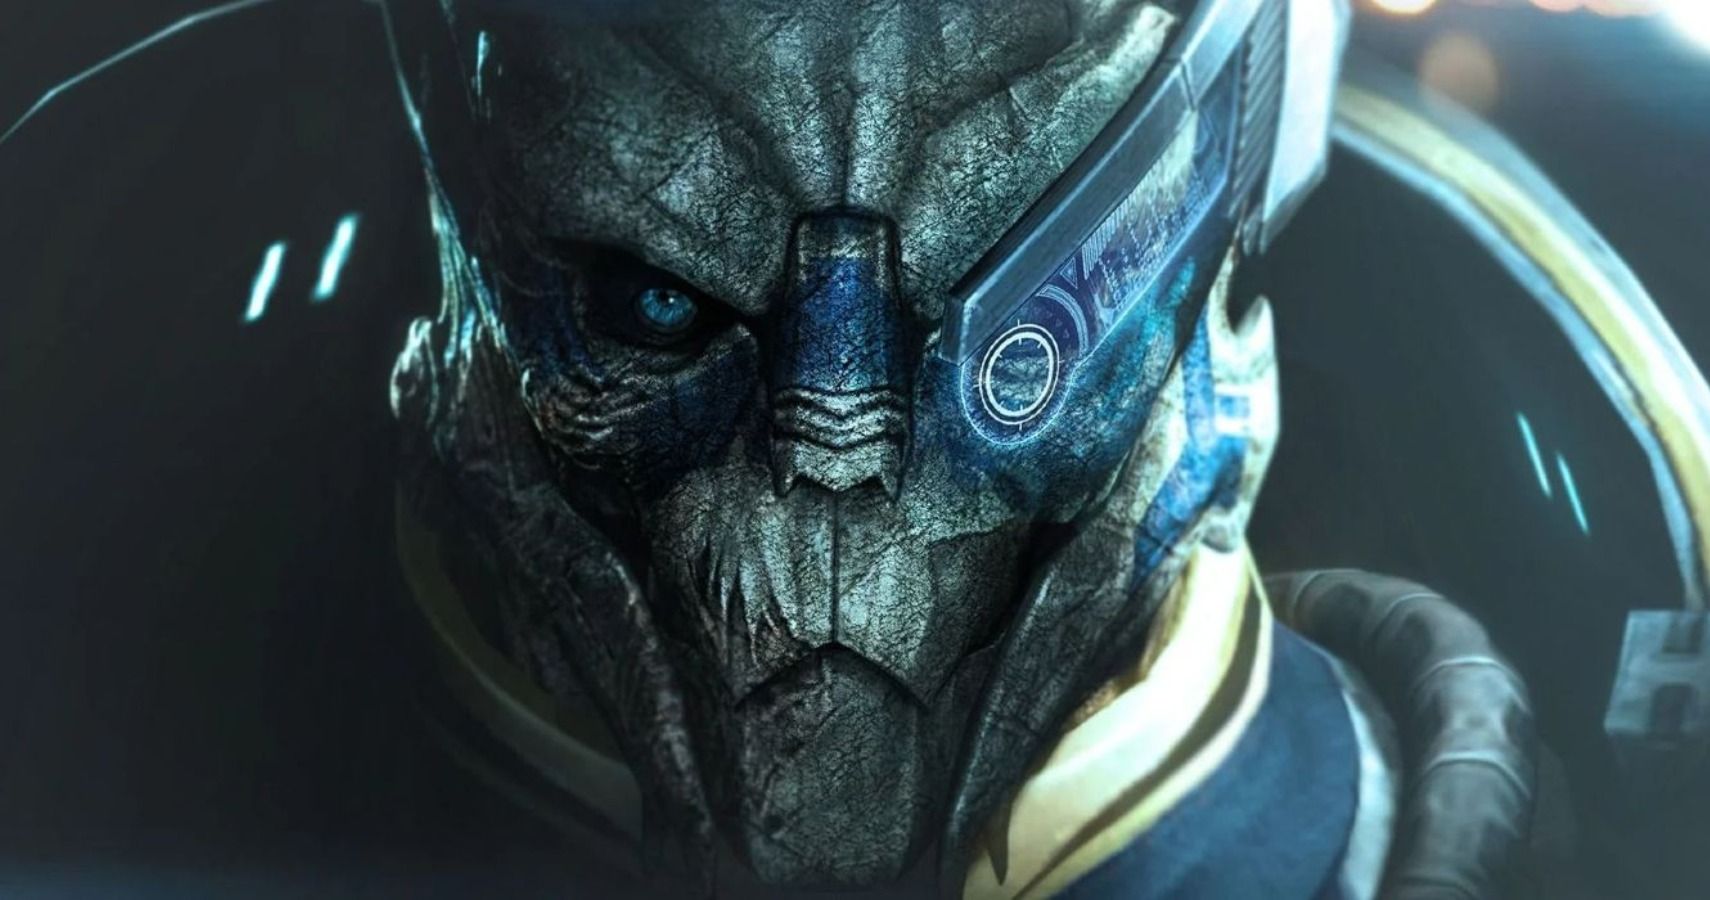 Mass Effect - Garrus Vakarian's gaze